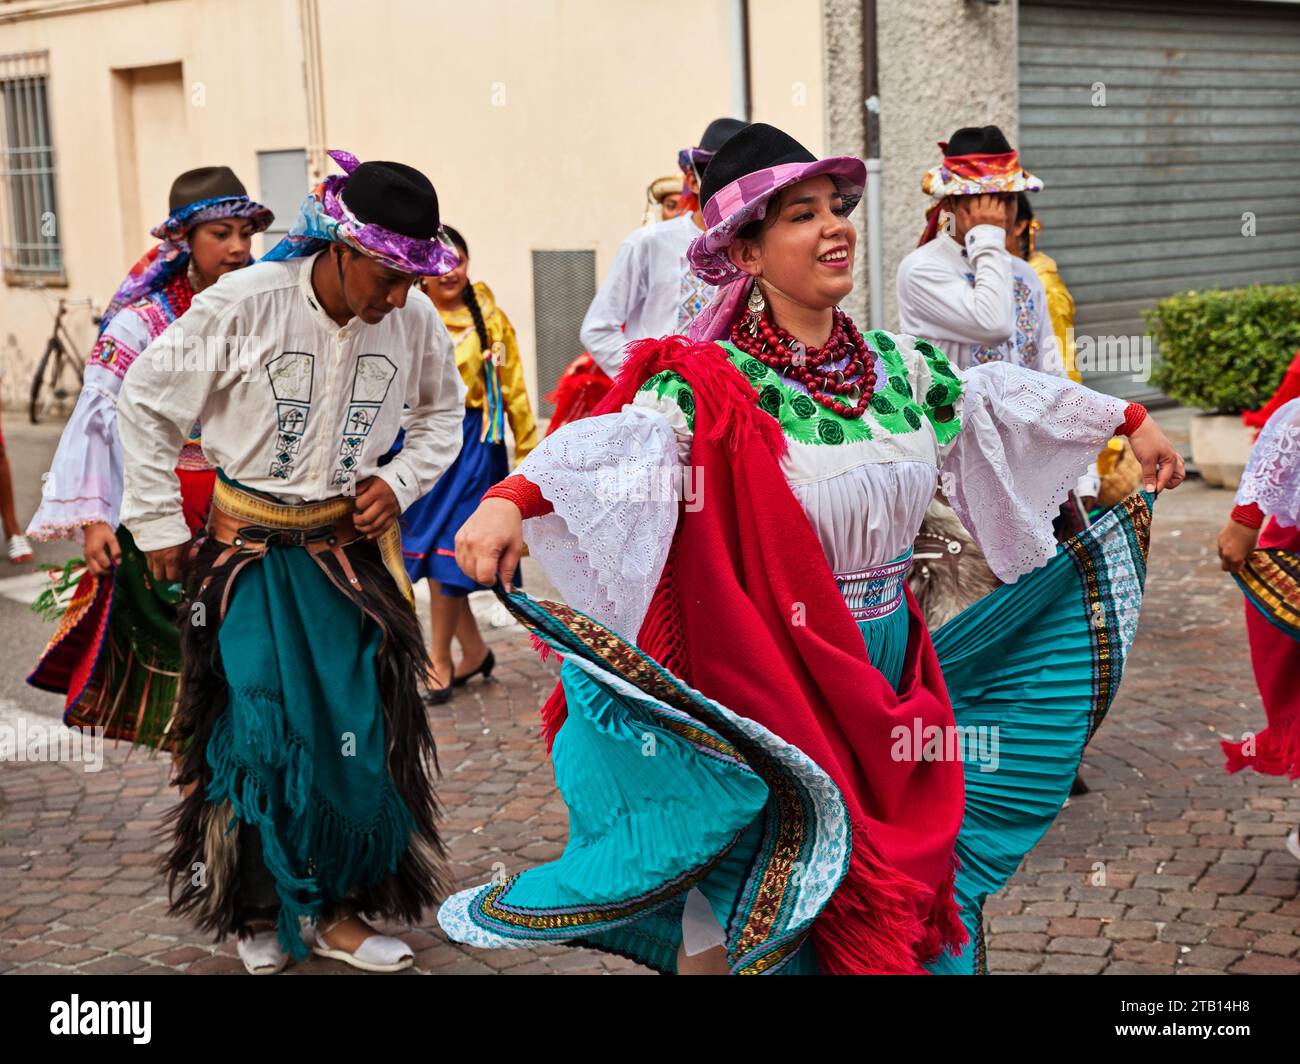 L'ensemble de danse folklorique Cuniburo Cultural de l'Équateur exécute des danses traditionnelles dans la rue de la ville pendant le Festival international de folklore à Rus Banque D'Images